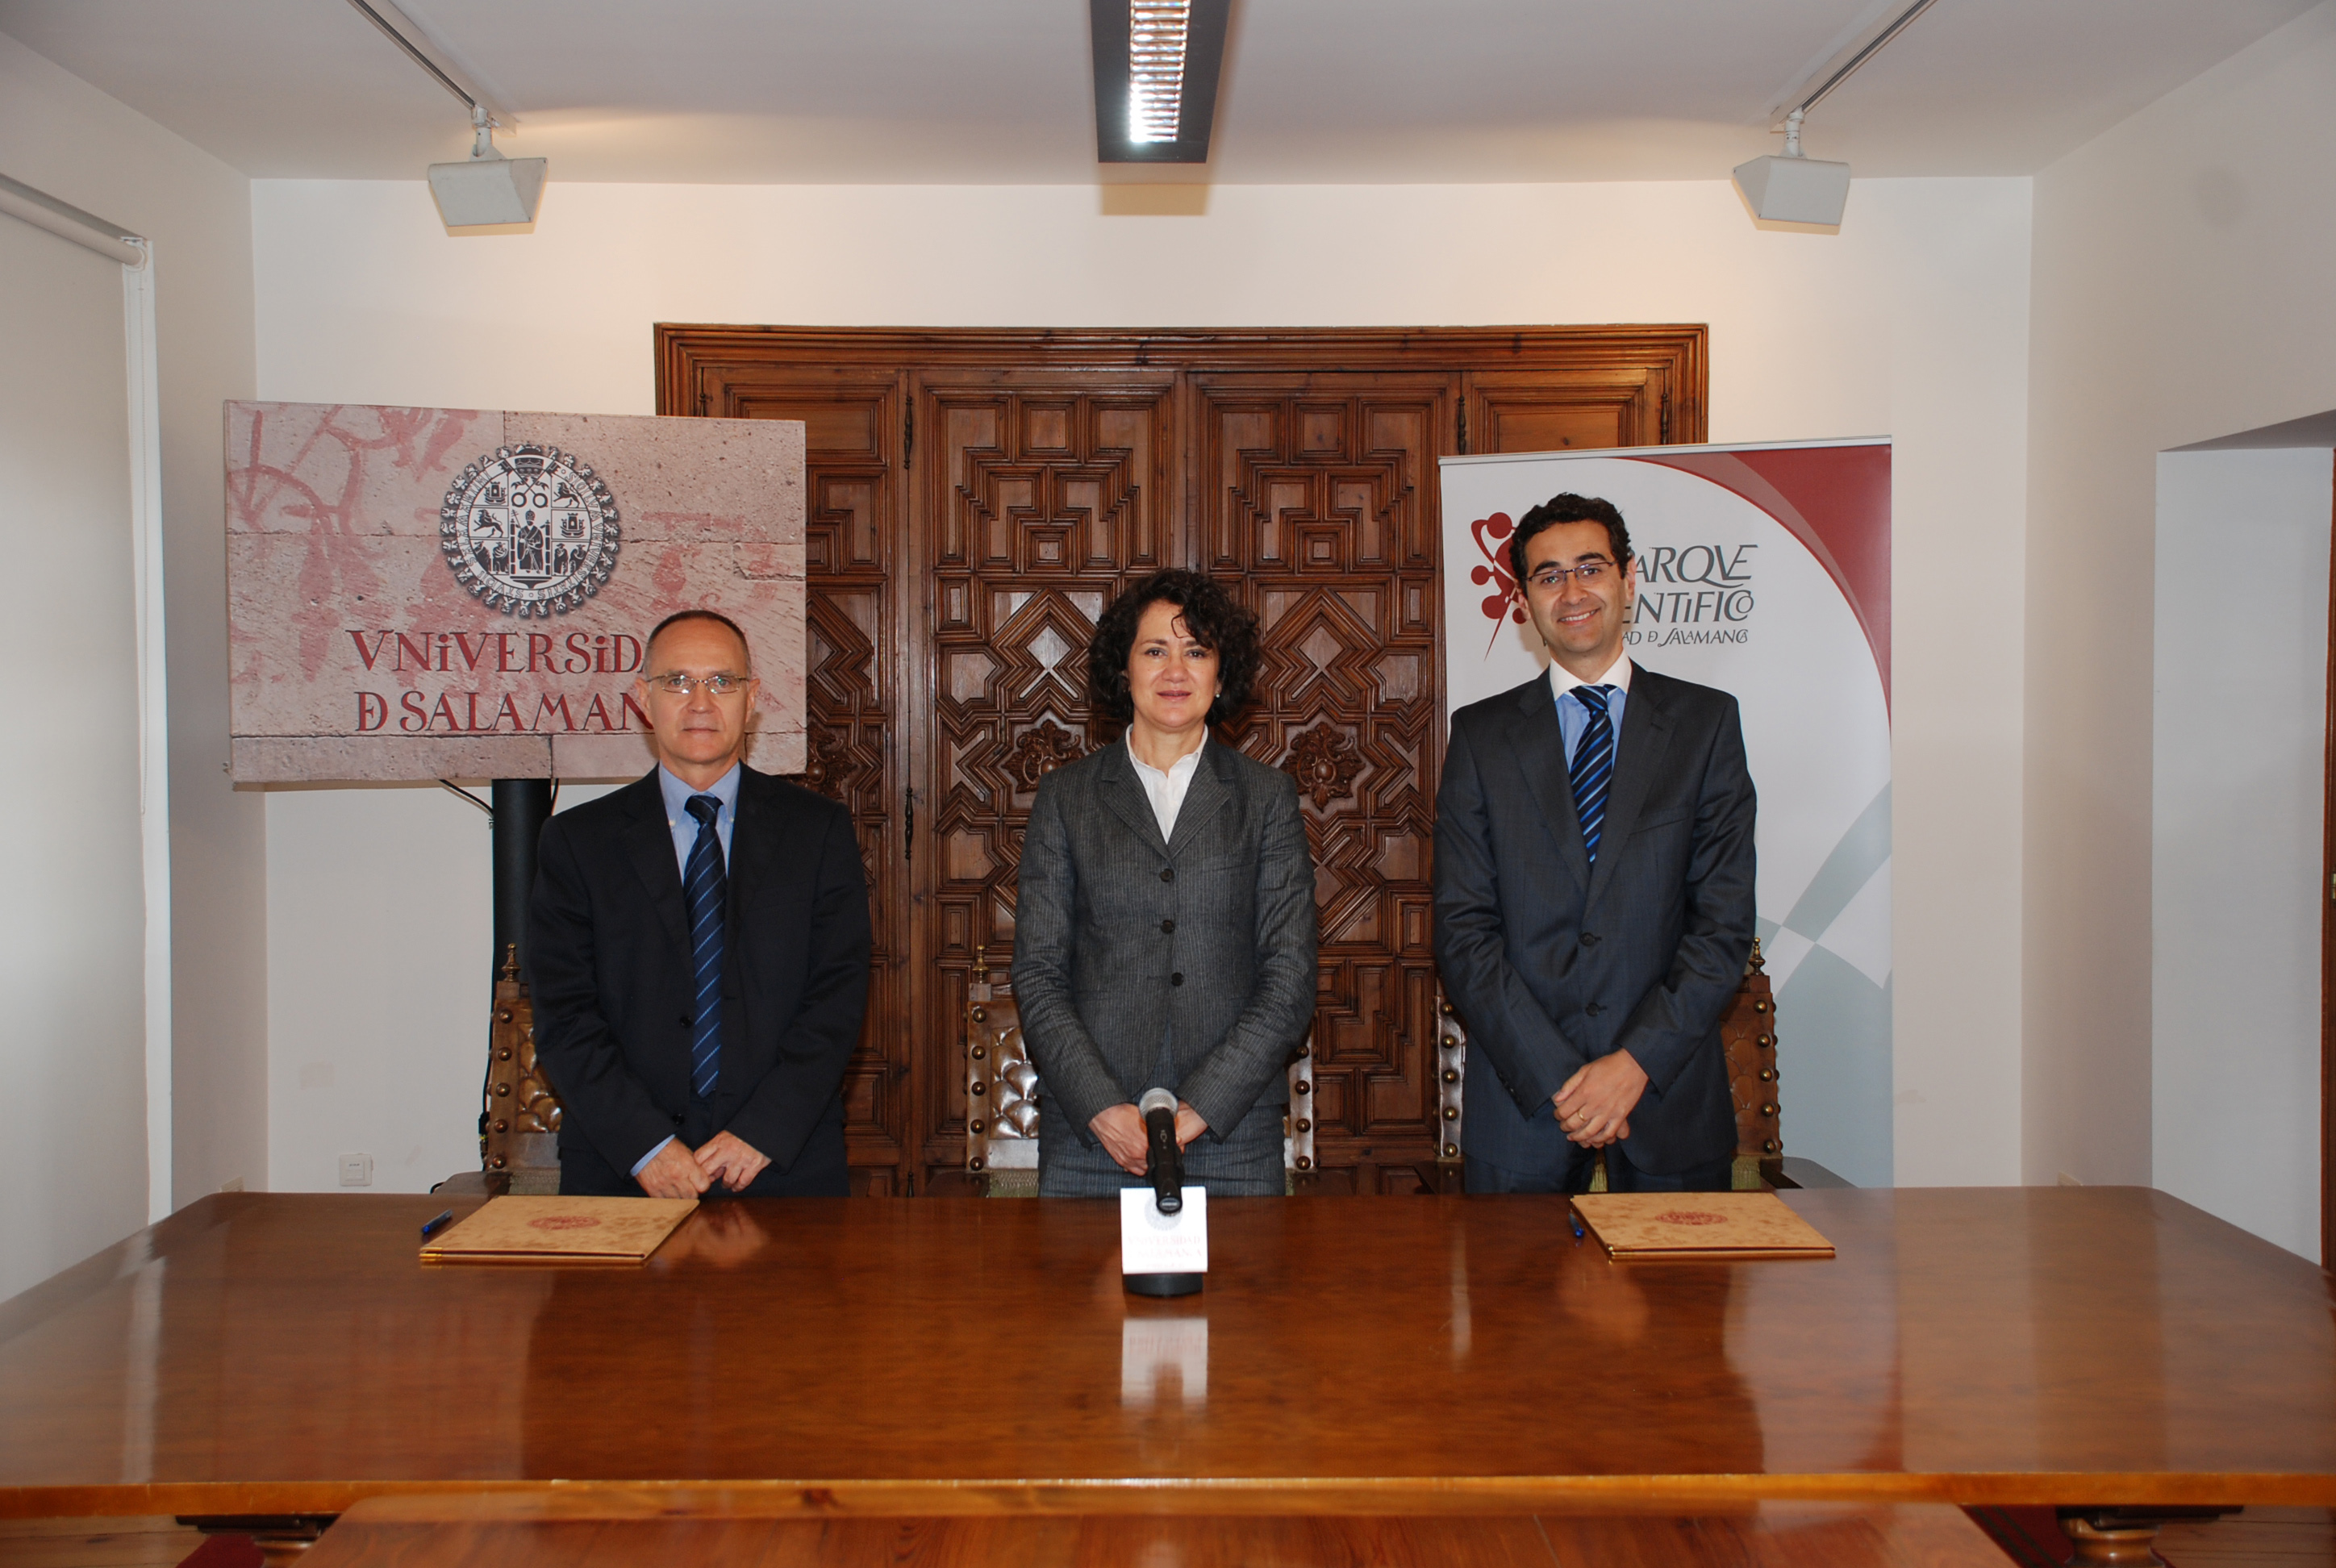 La Fundación Parque Científico de la Universidad de Salamanca suscribe un convenio con la empresa Novatriz Consult